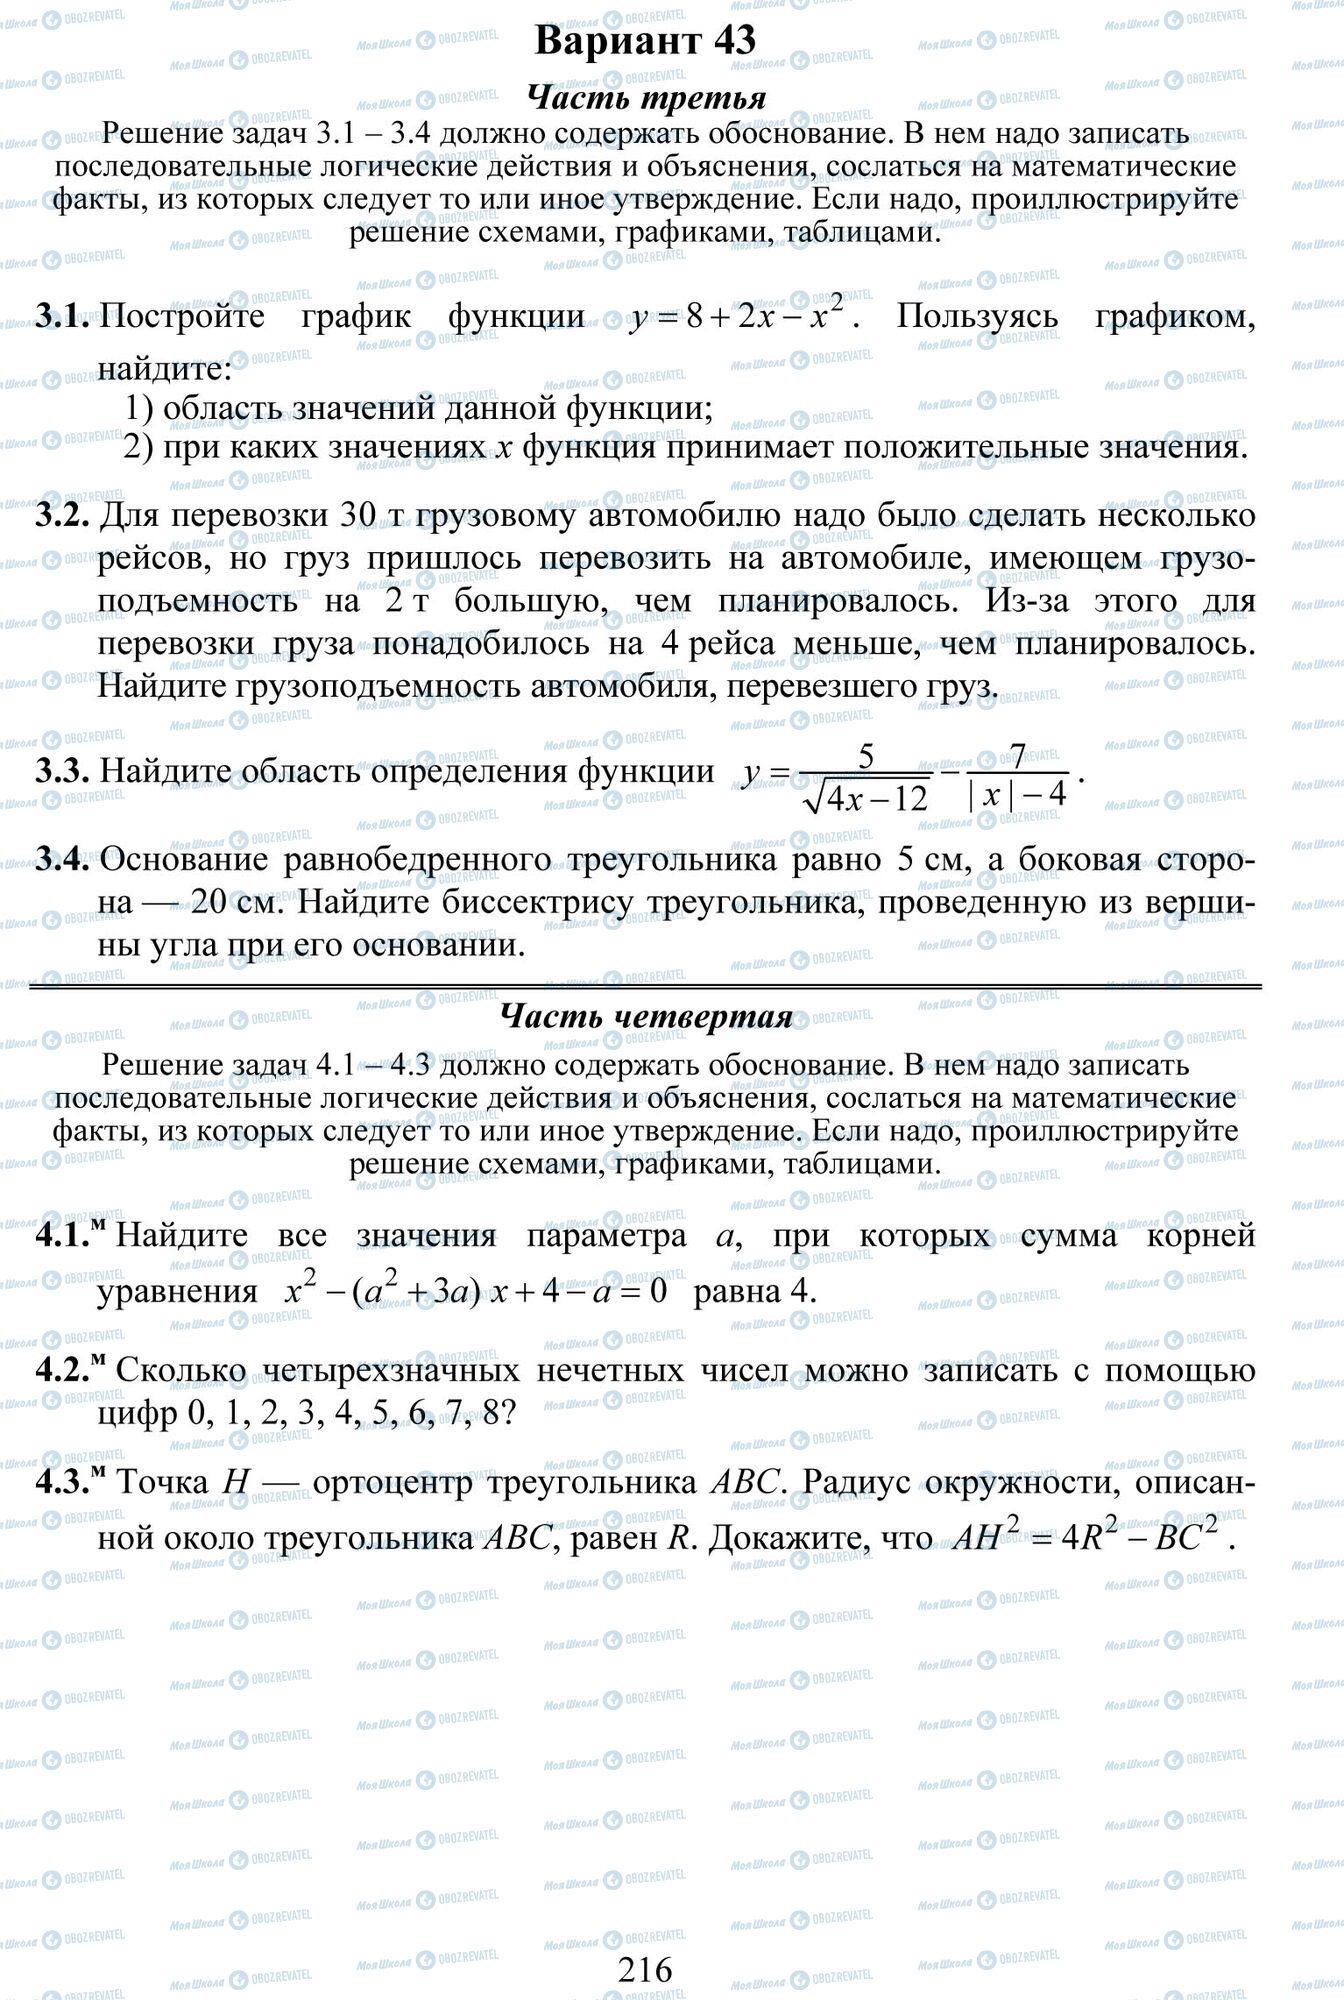 ДПА Математика 9 класс страница 1-4 -- 1-3